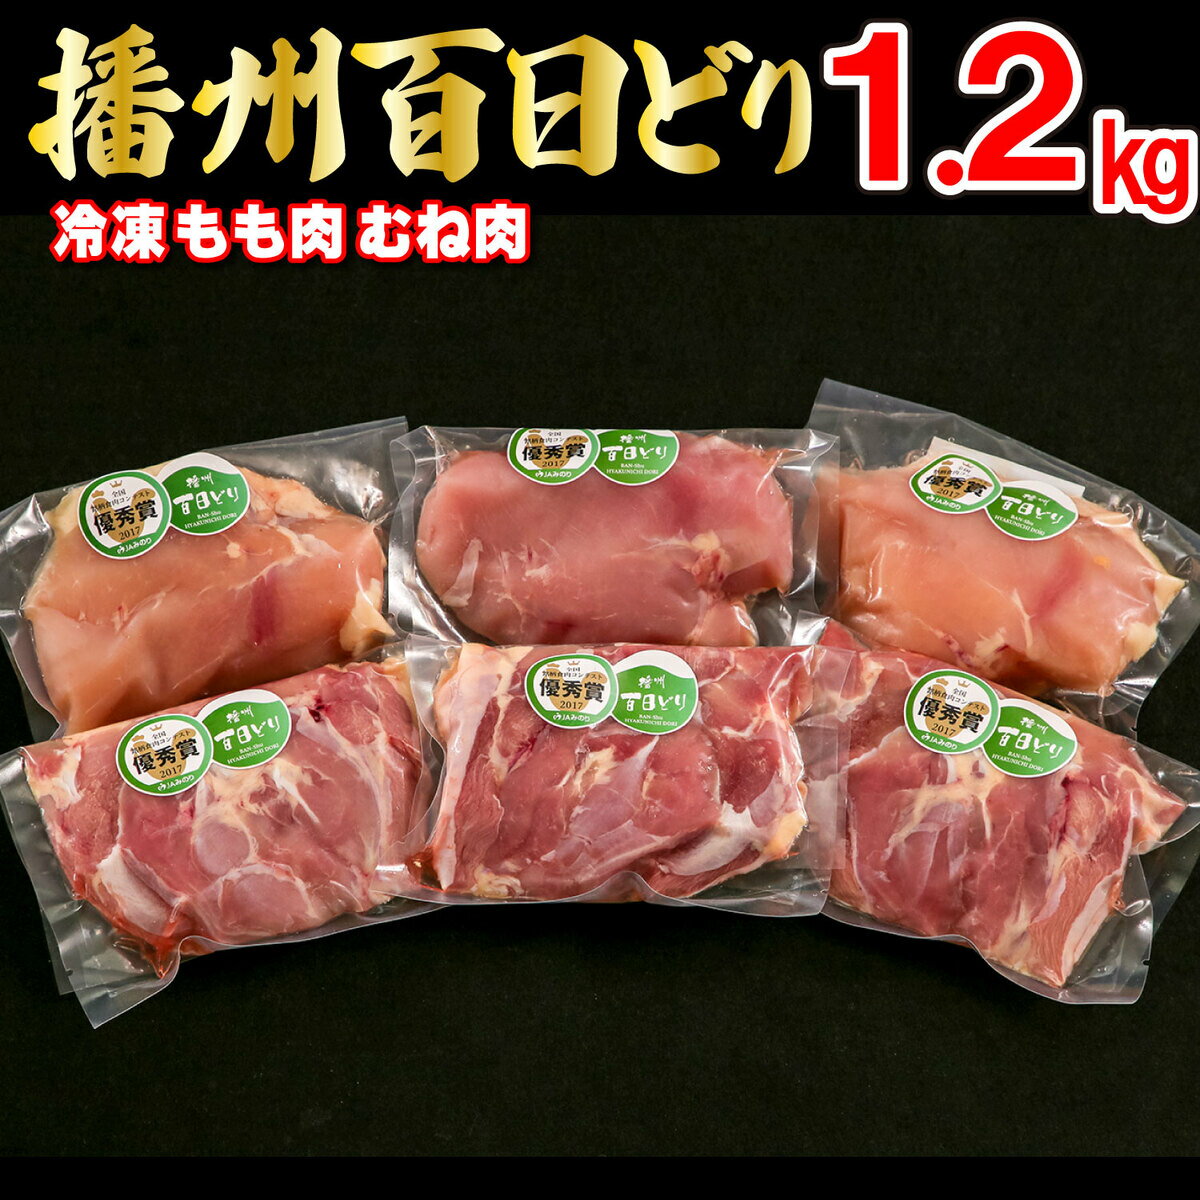 播州百日どり 鶏肉 冷凍 小分け もも肉 むね肉 セット 1.2kg [668]